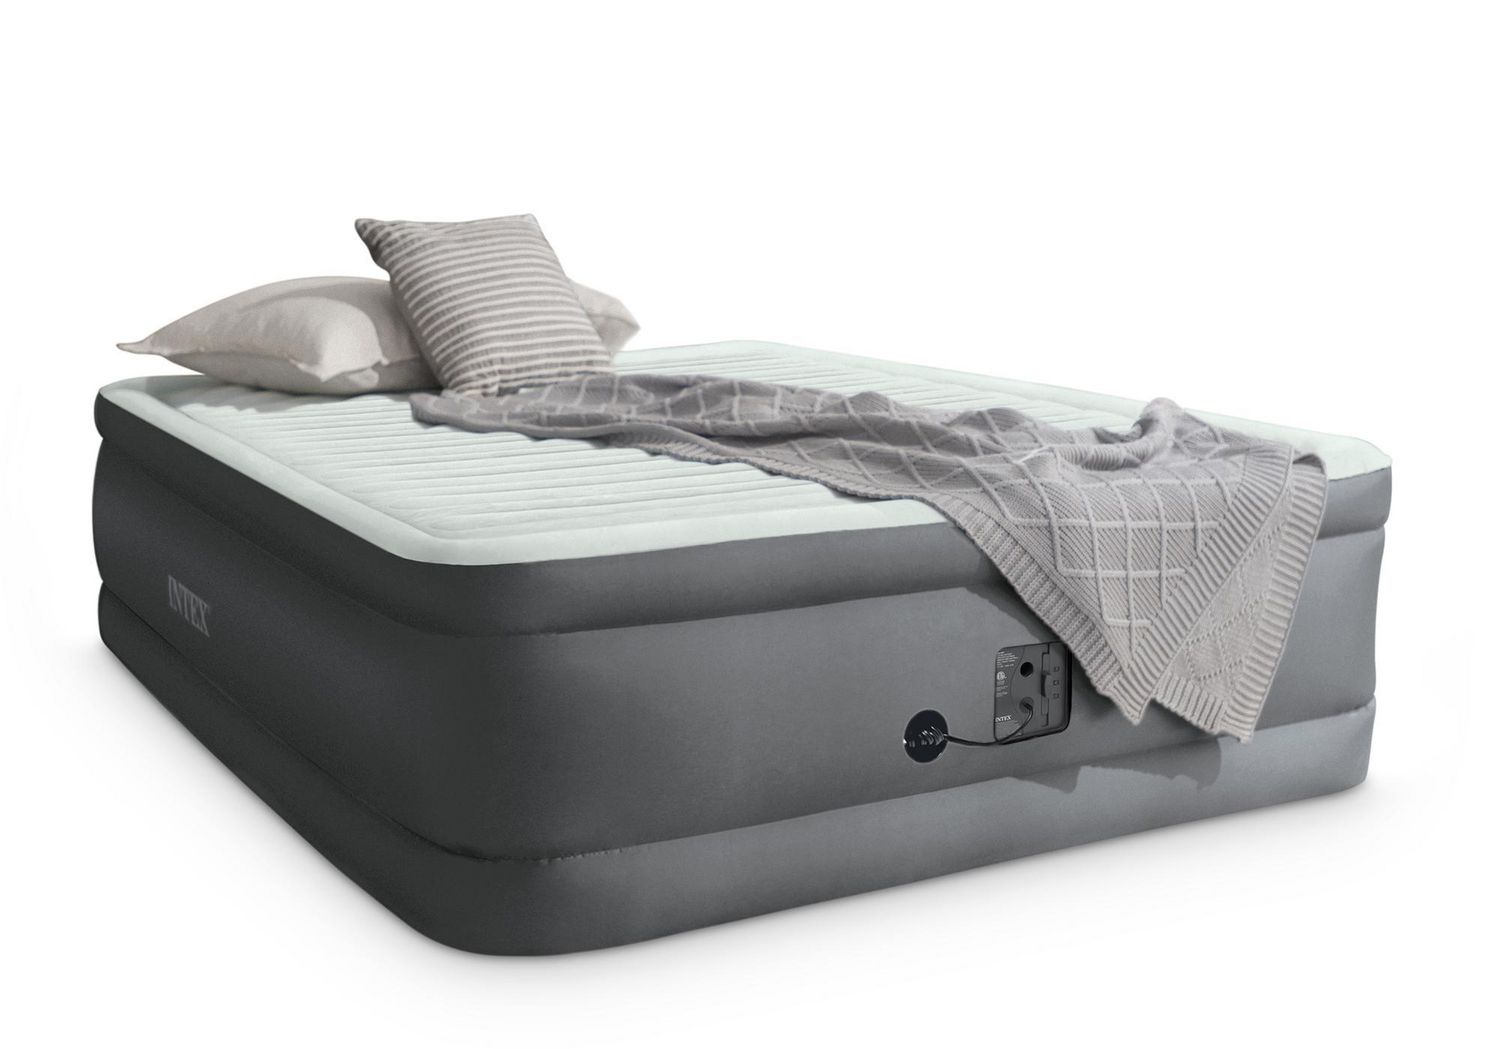 premaire air mattress reviews